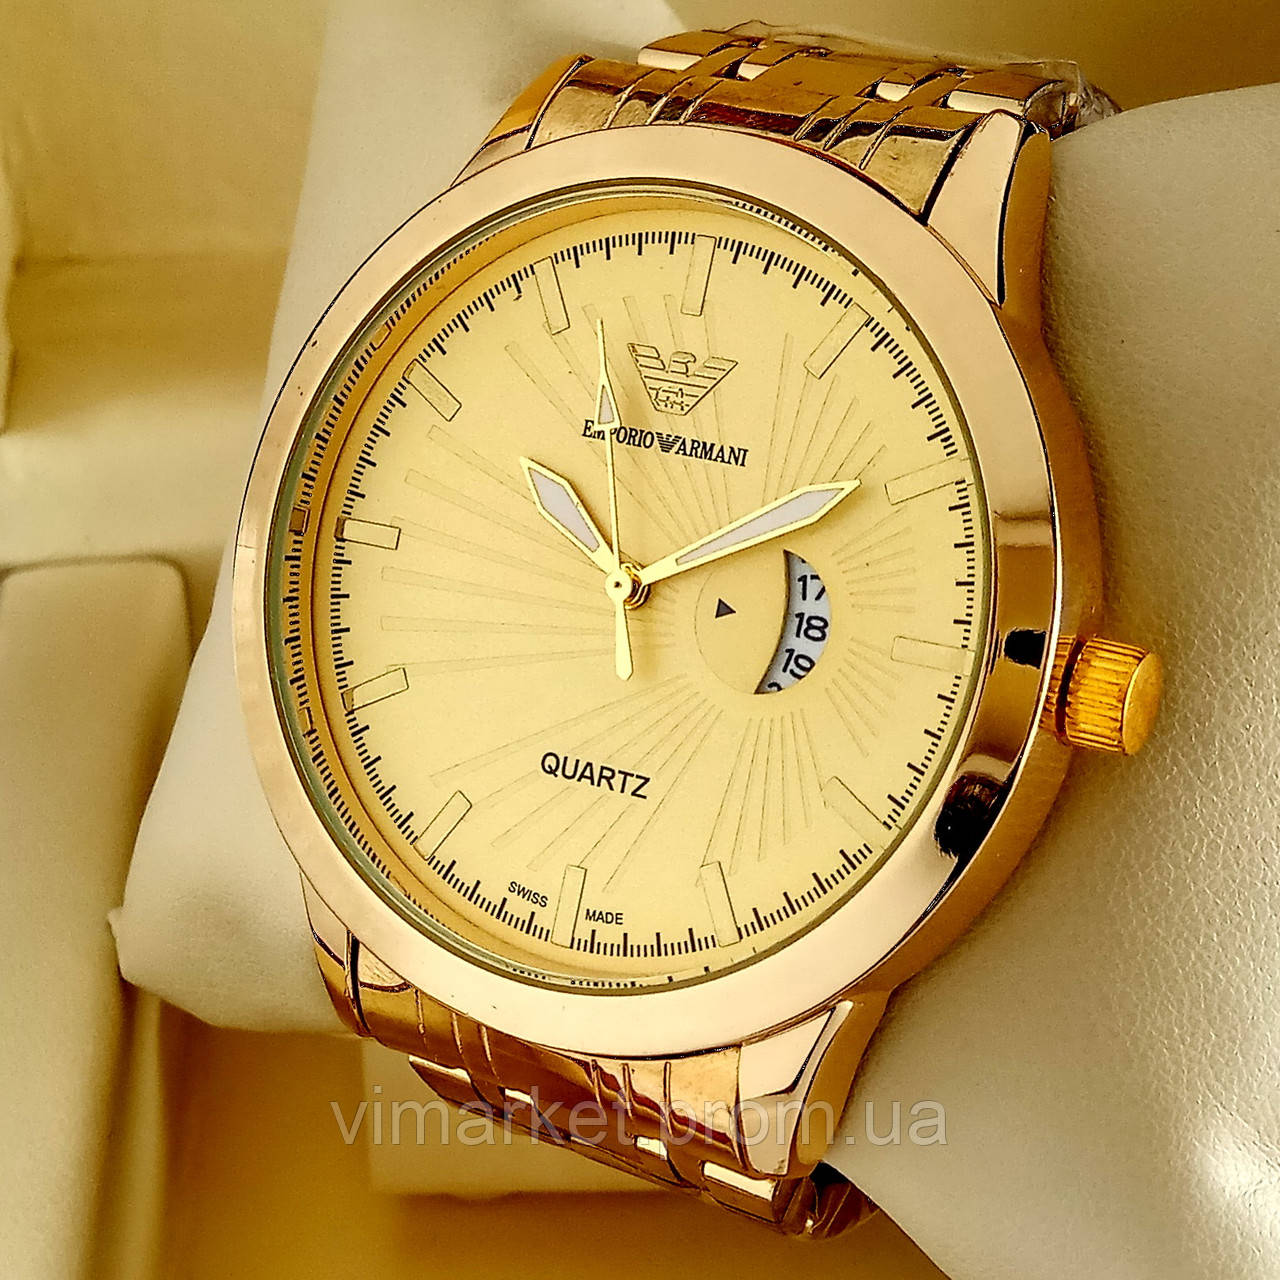 Чоловічі кварцові наручні годинники Emporio Armani T104 золотого кольору з золотим циферблатом з датою